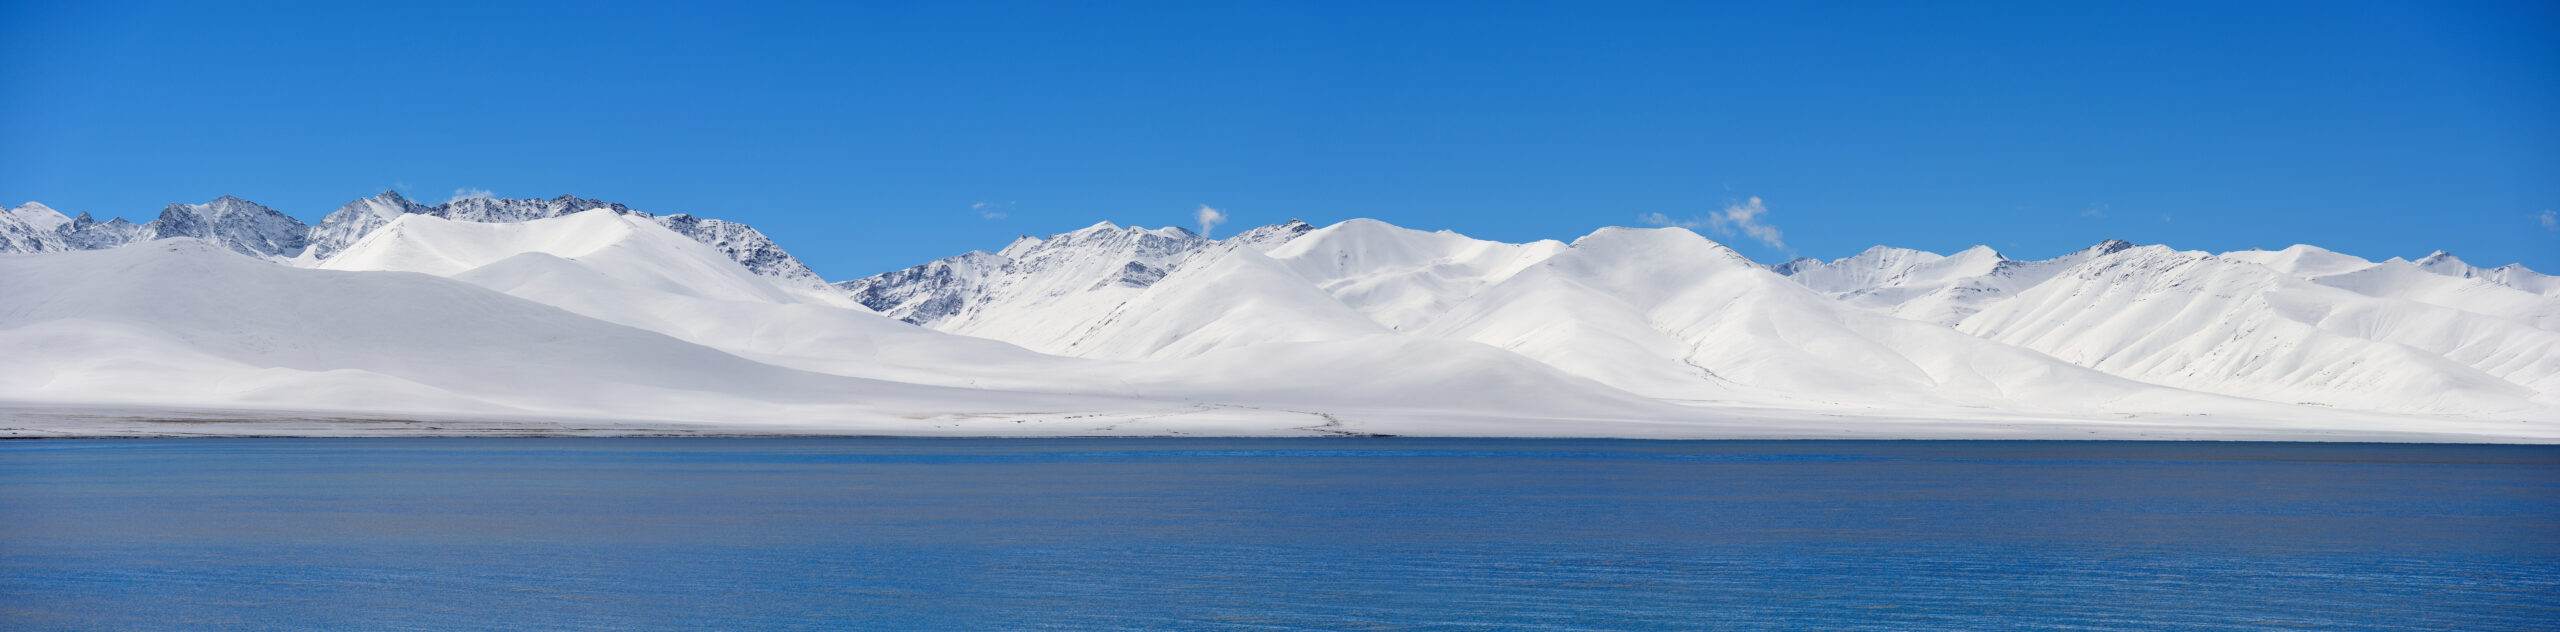 image of Namu Lake Tibet